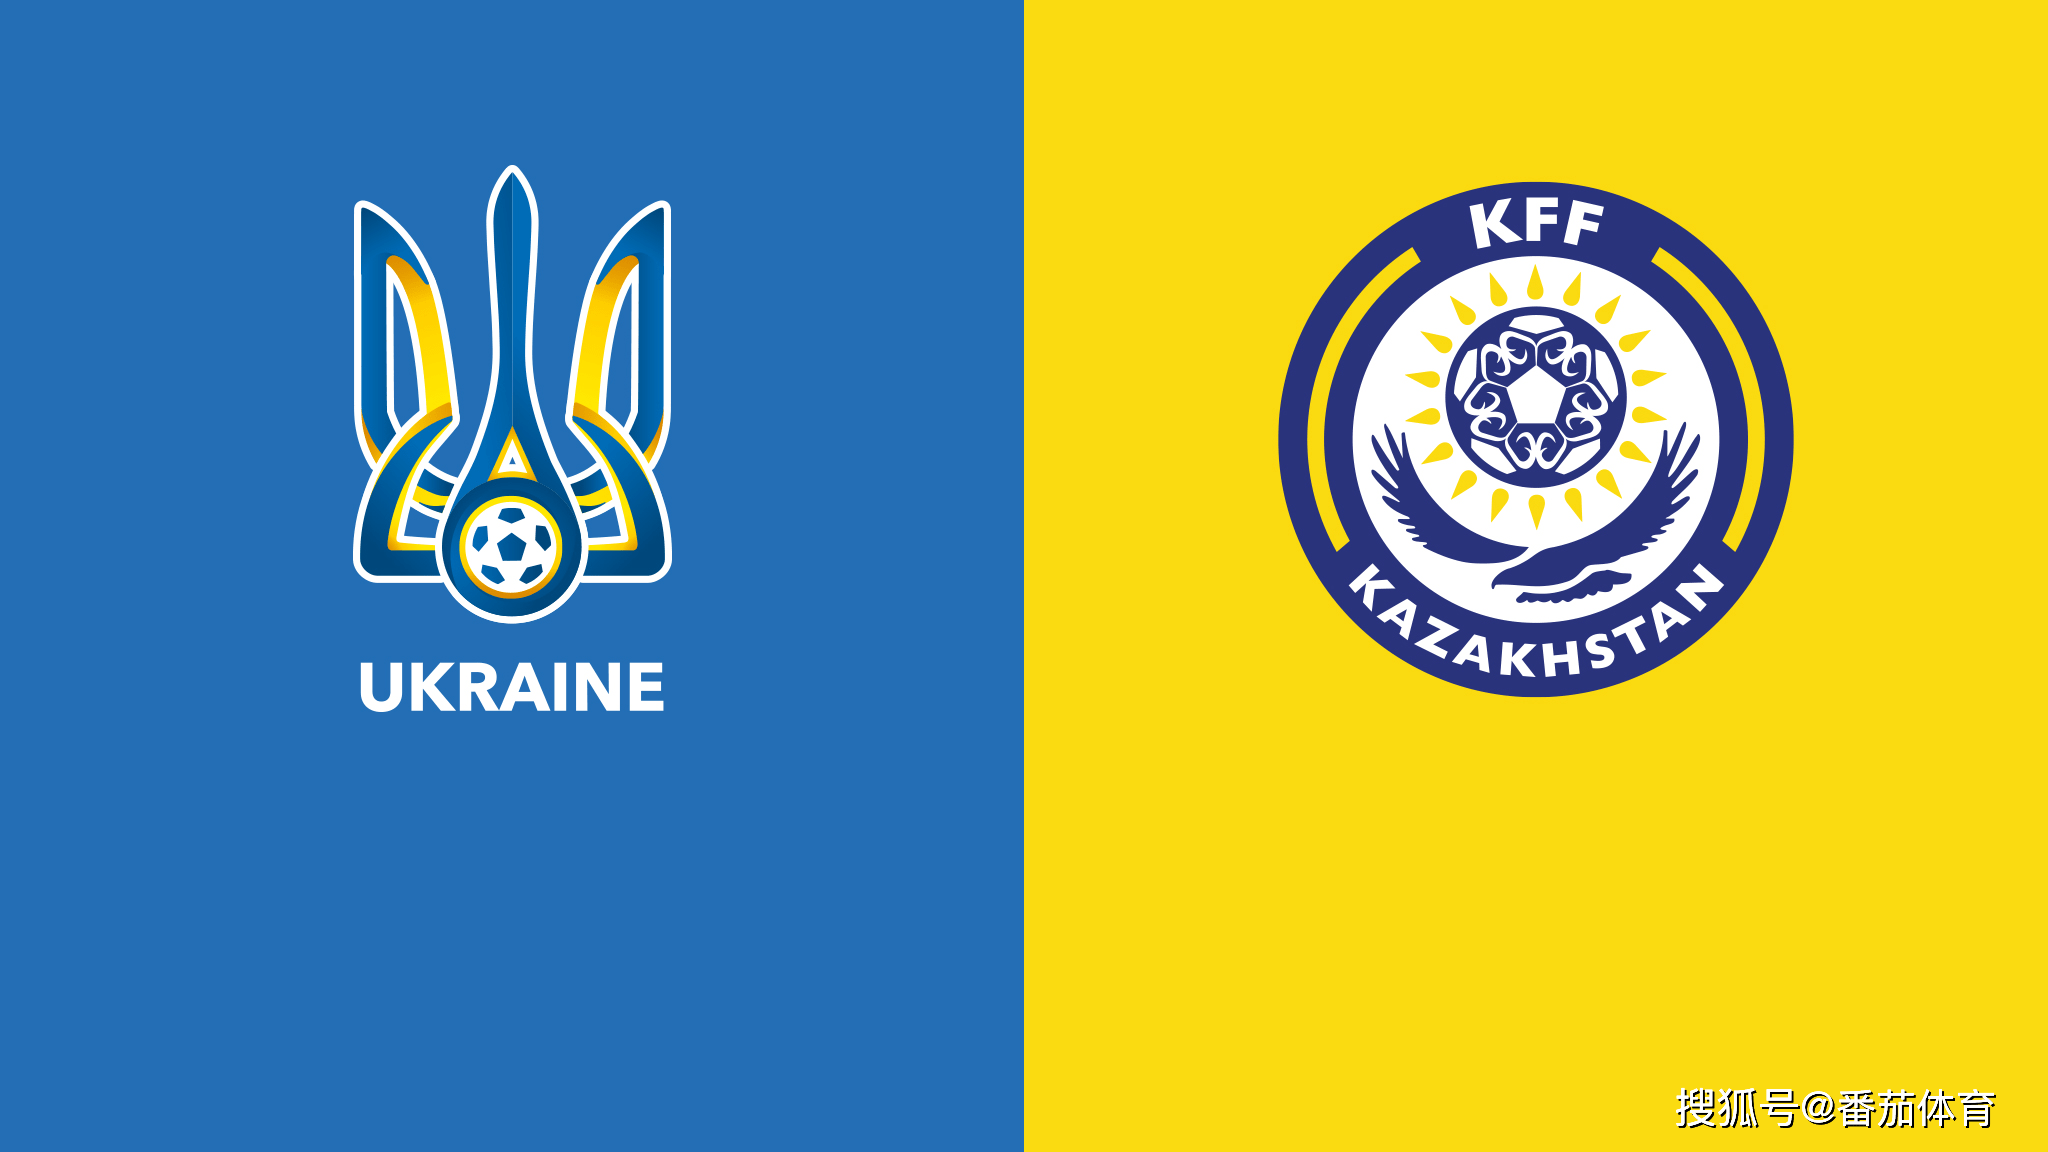 [欧洲预选]赛事前瞻:乌克兰vs哈萨克斯坦,乌克兰更胜一筹